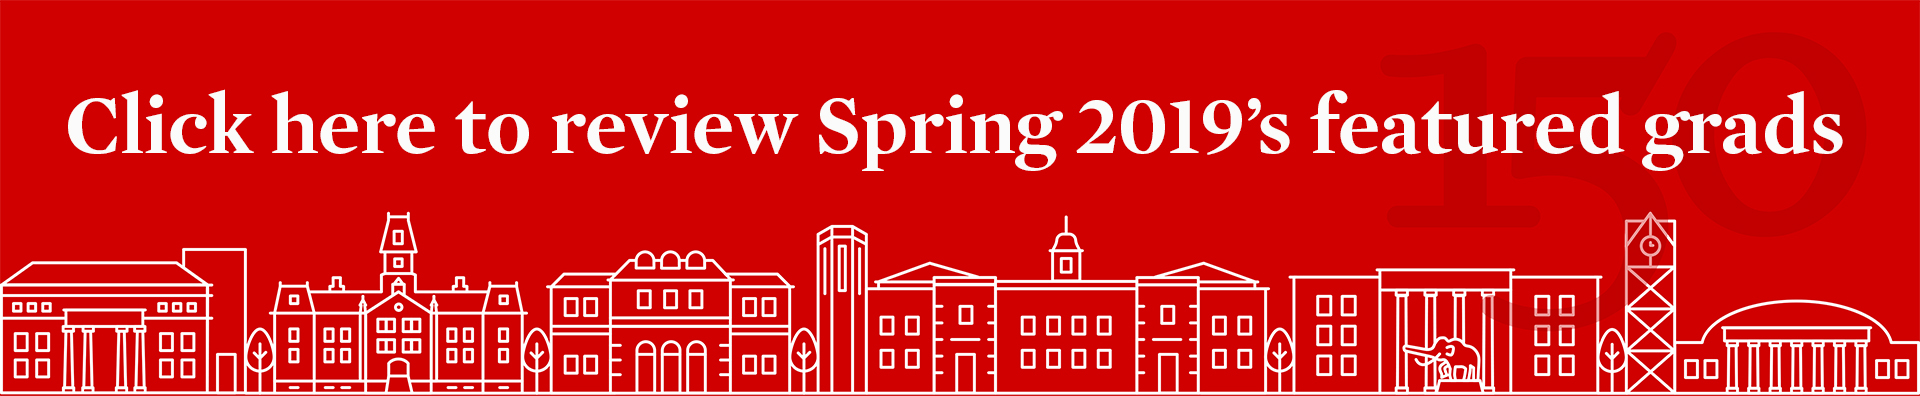 Spring 2019 featured grads